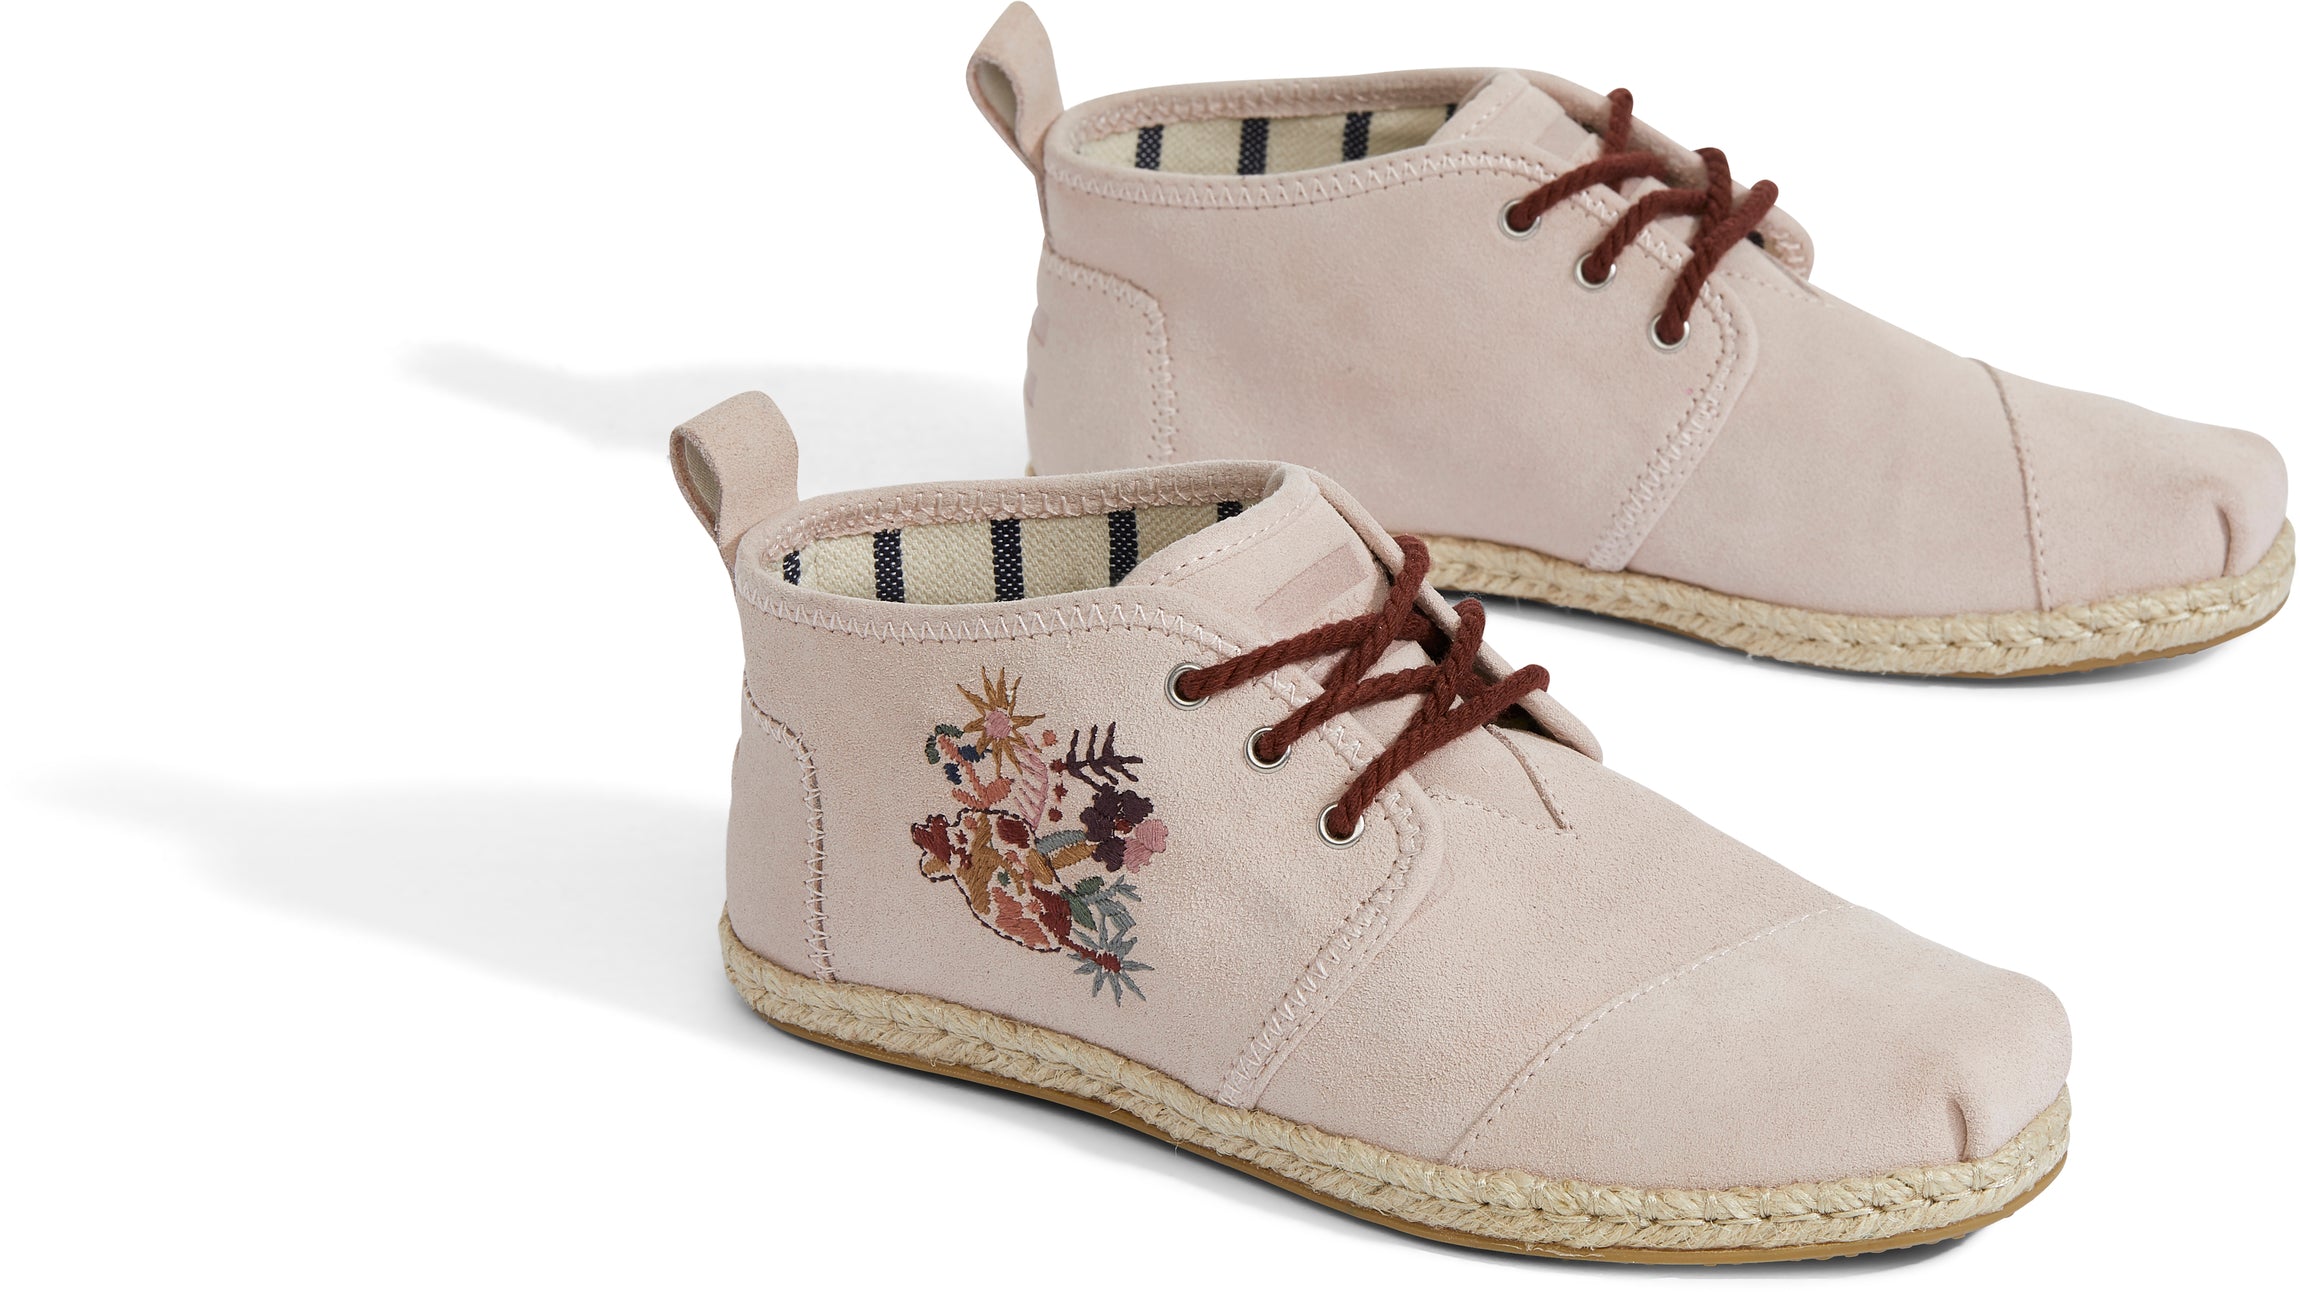 Dámské růžové kotníkové boty TOMS Embroidery Botas